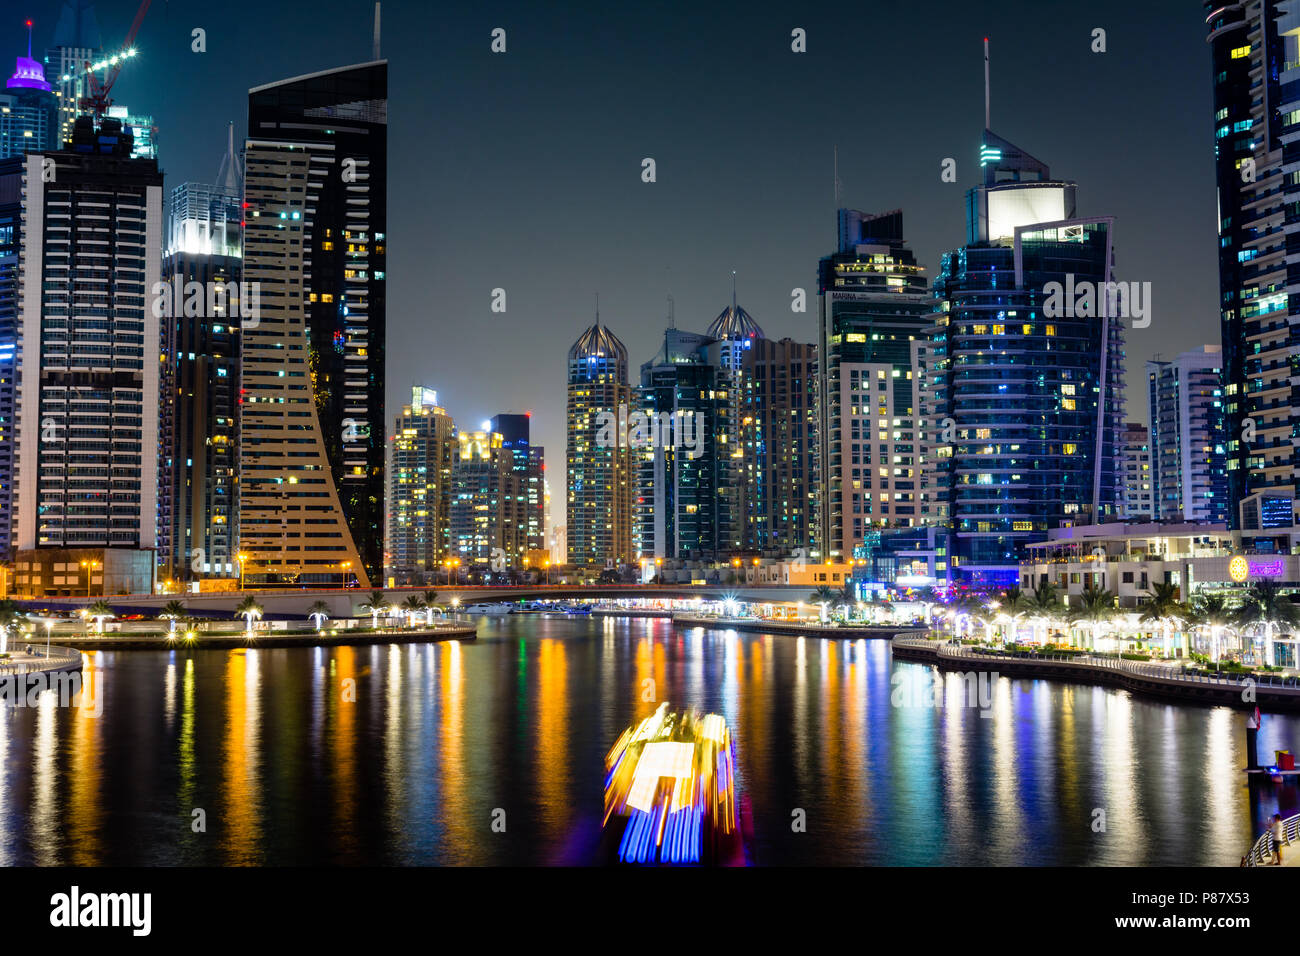 Dubai, Vereinigte Arabische Emirate - Juni 6, 2018: Dubai Marina modern und glänzenden Wolkenkratzern im Wasser spiegelt in der Nacht Stockfoto